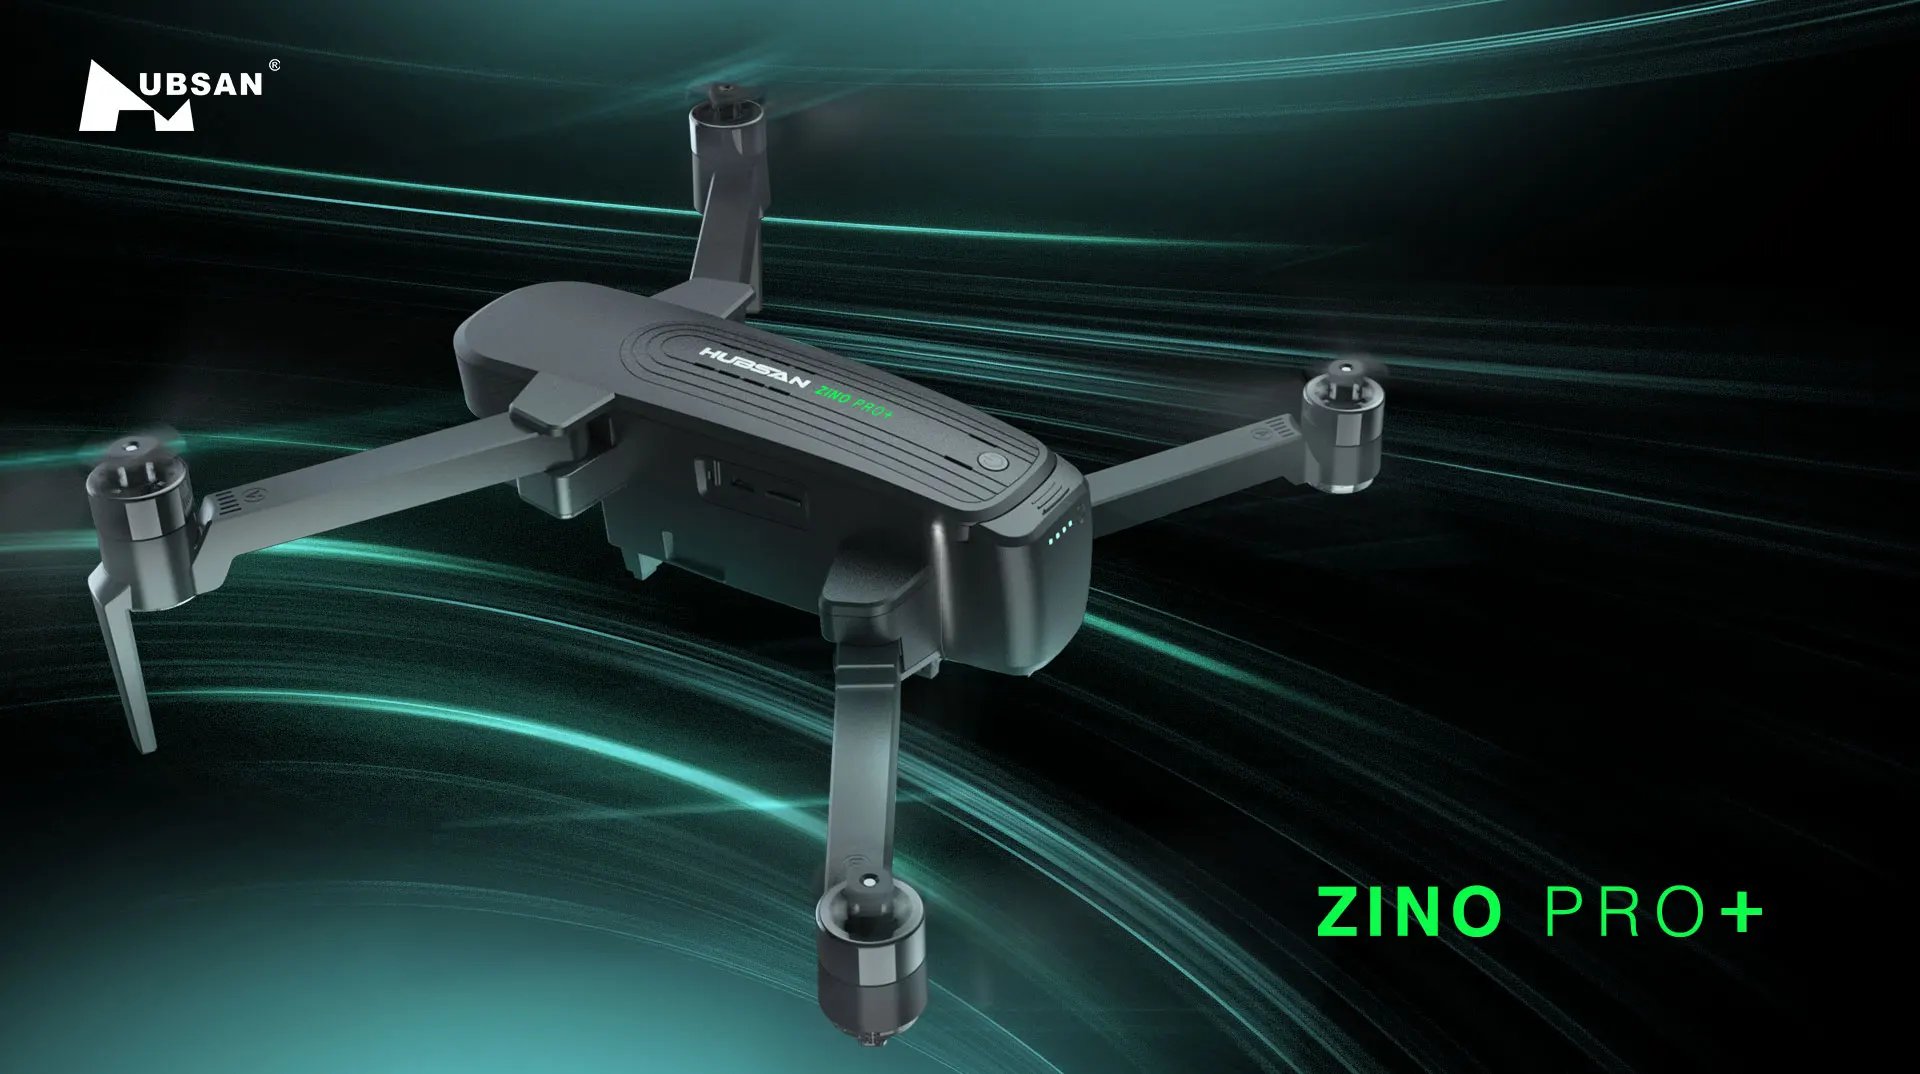 Source Hubsan Zino Pro Plus Drone GPS Zino Pro+ 8KM 4K Camera 43Mins 3 axis Gimbal Brushless Profissional on m.alibaba.com